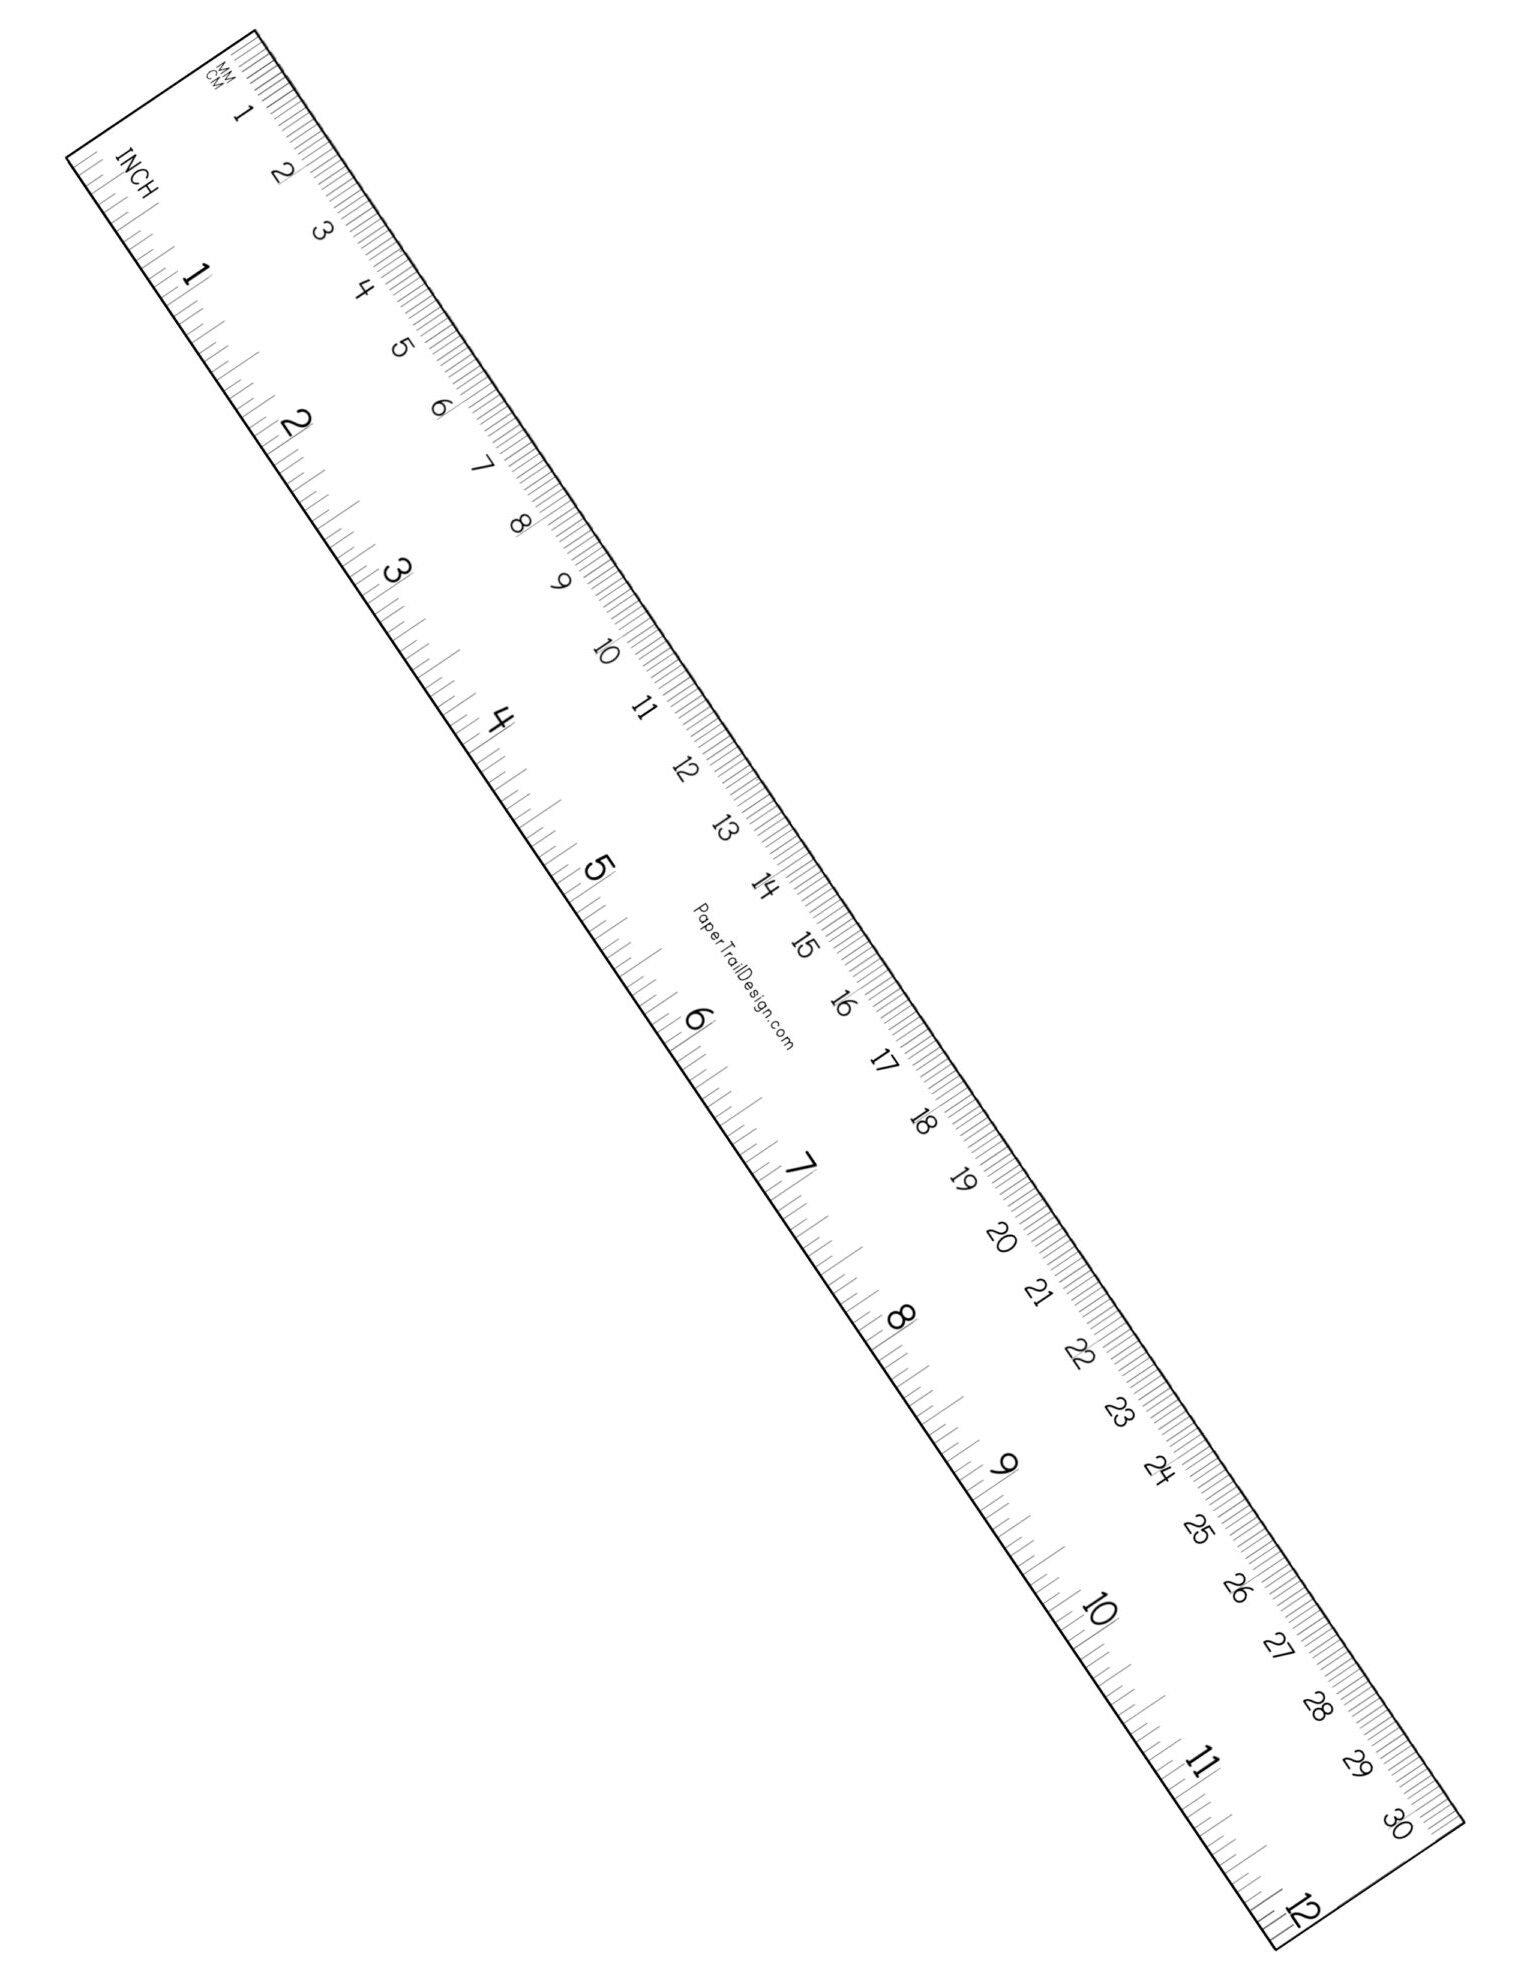 life size centimeter ruler